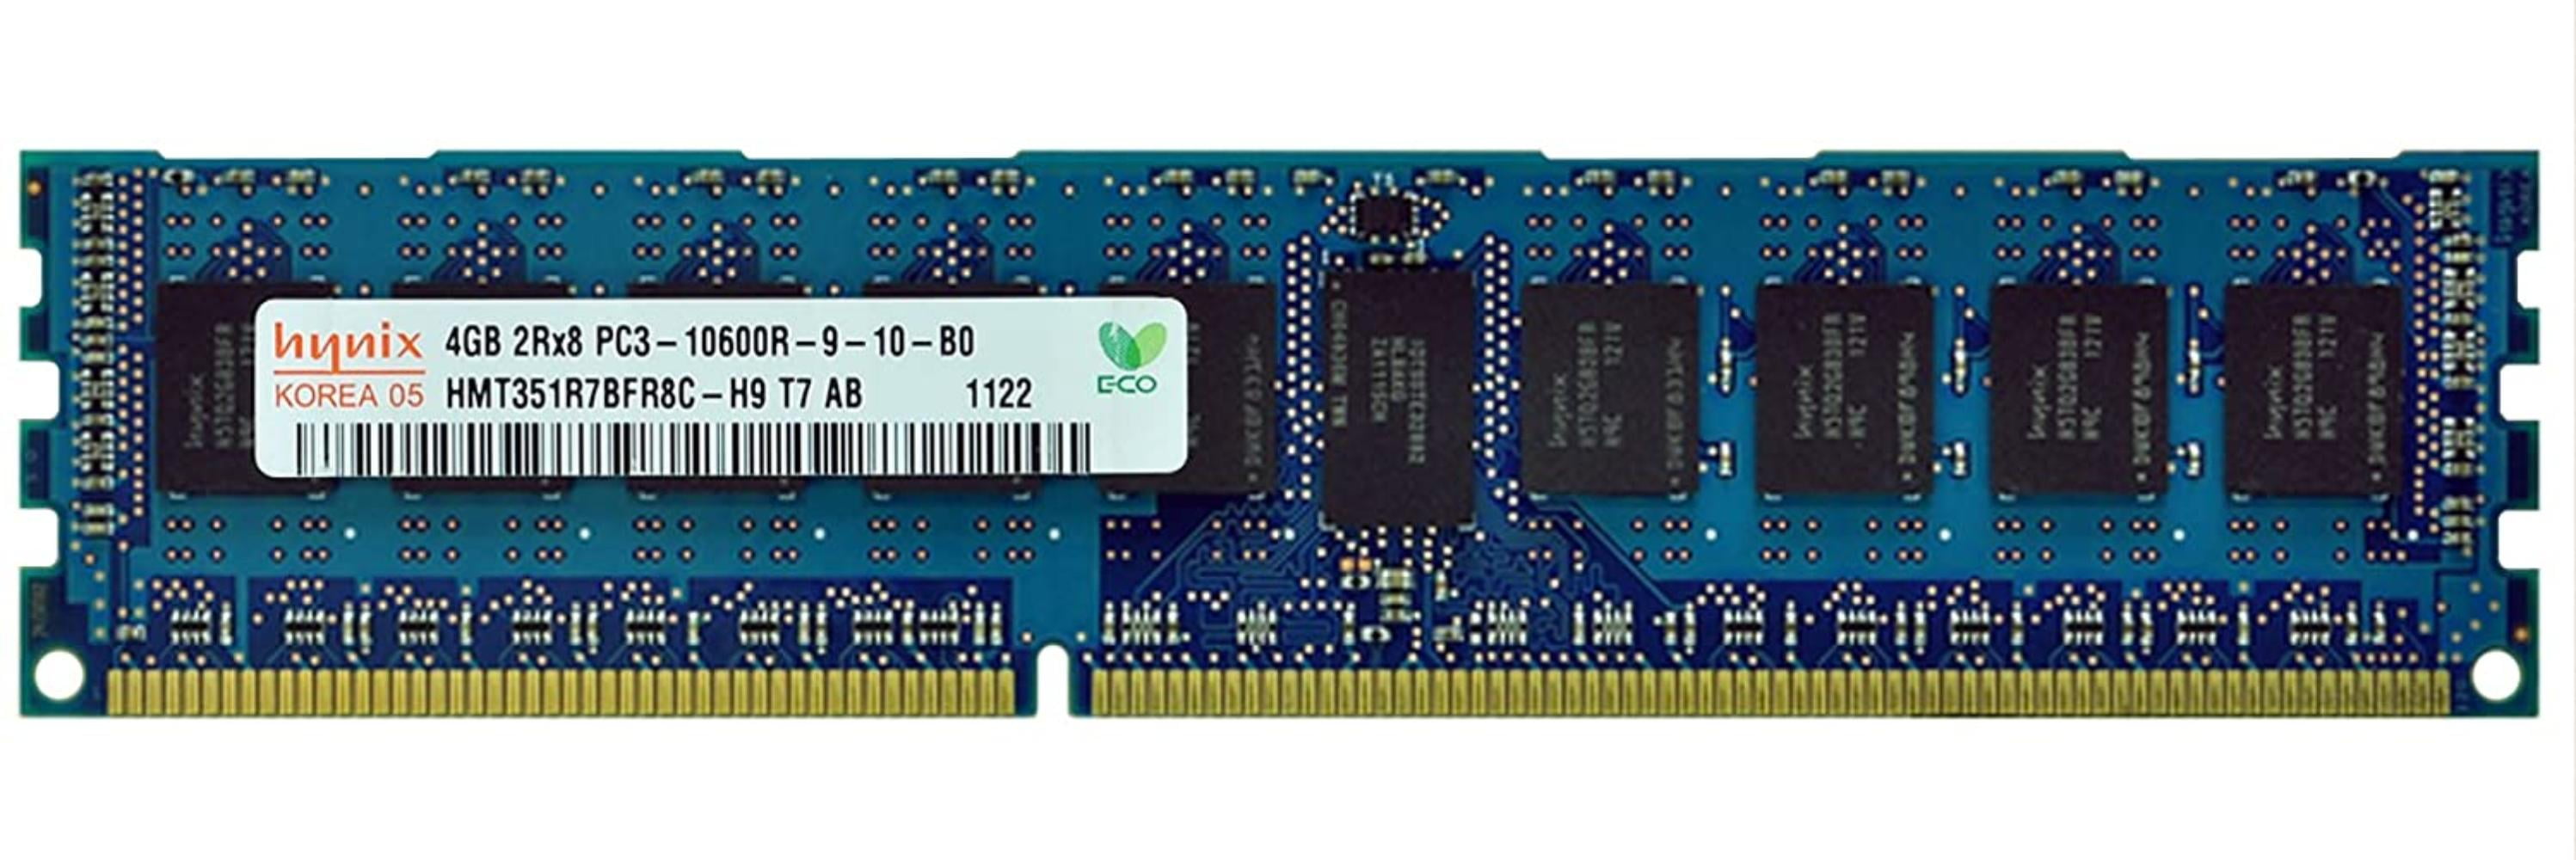 Hynix 4GB DDR3L 1333Mhz 2Rx8 PC3L-10600E 240-PIN ECC Unbuffered Memory Ram Sdimm 